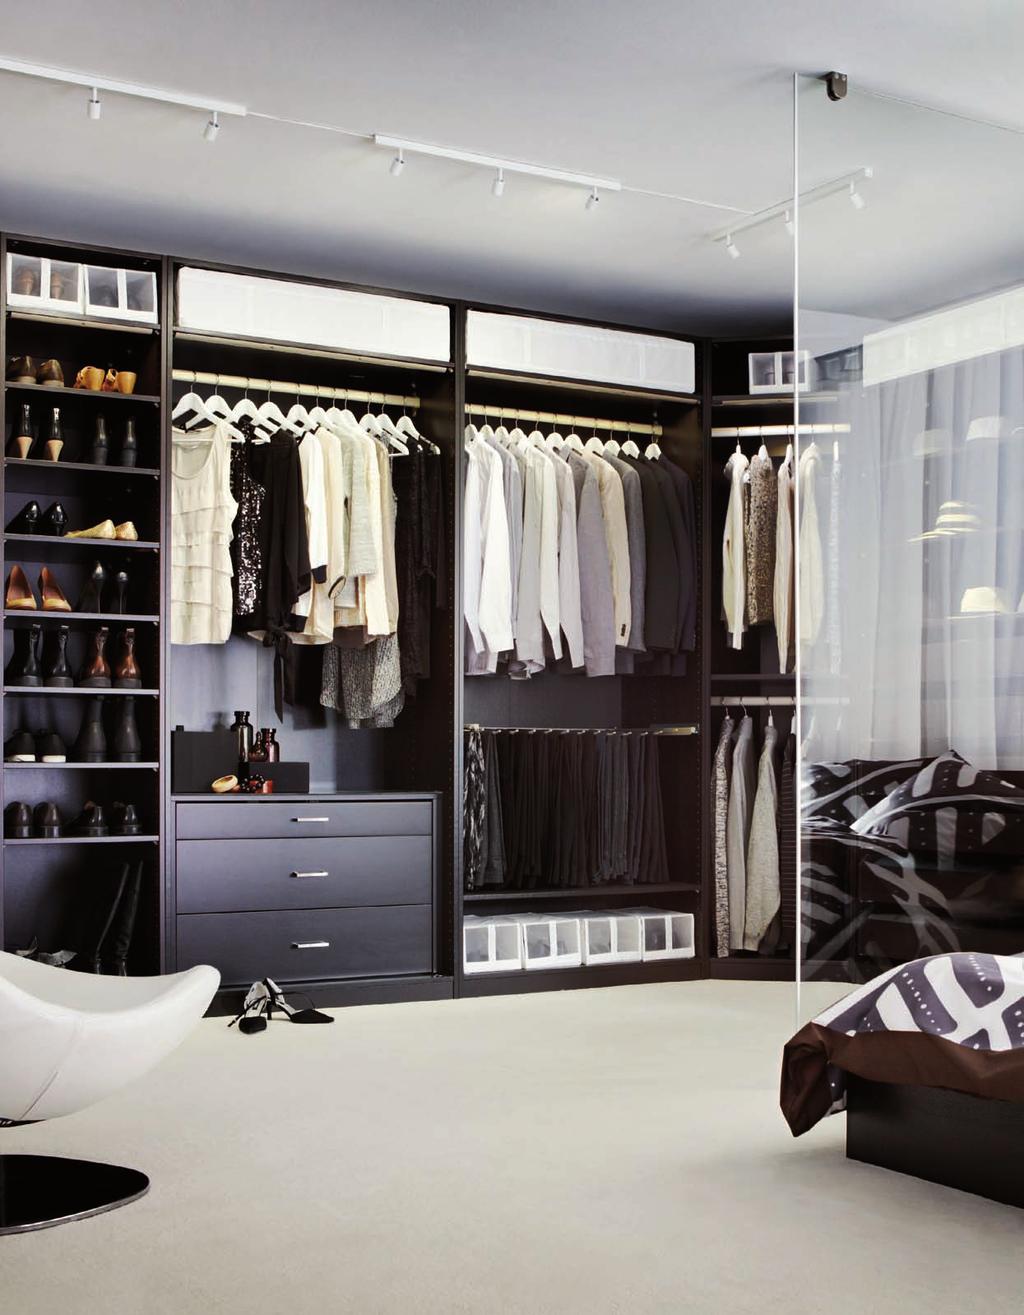 El vestidor de tus sueños Con las soluciones de orden y almacenaje PAX, puedes convertir cualquier espacio de casa en el vestidor que siempre soñaste.